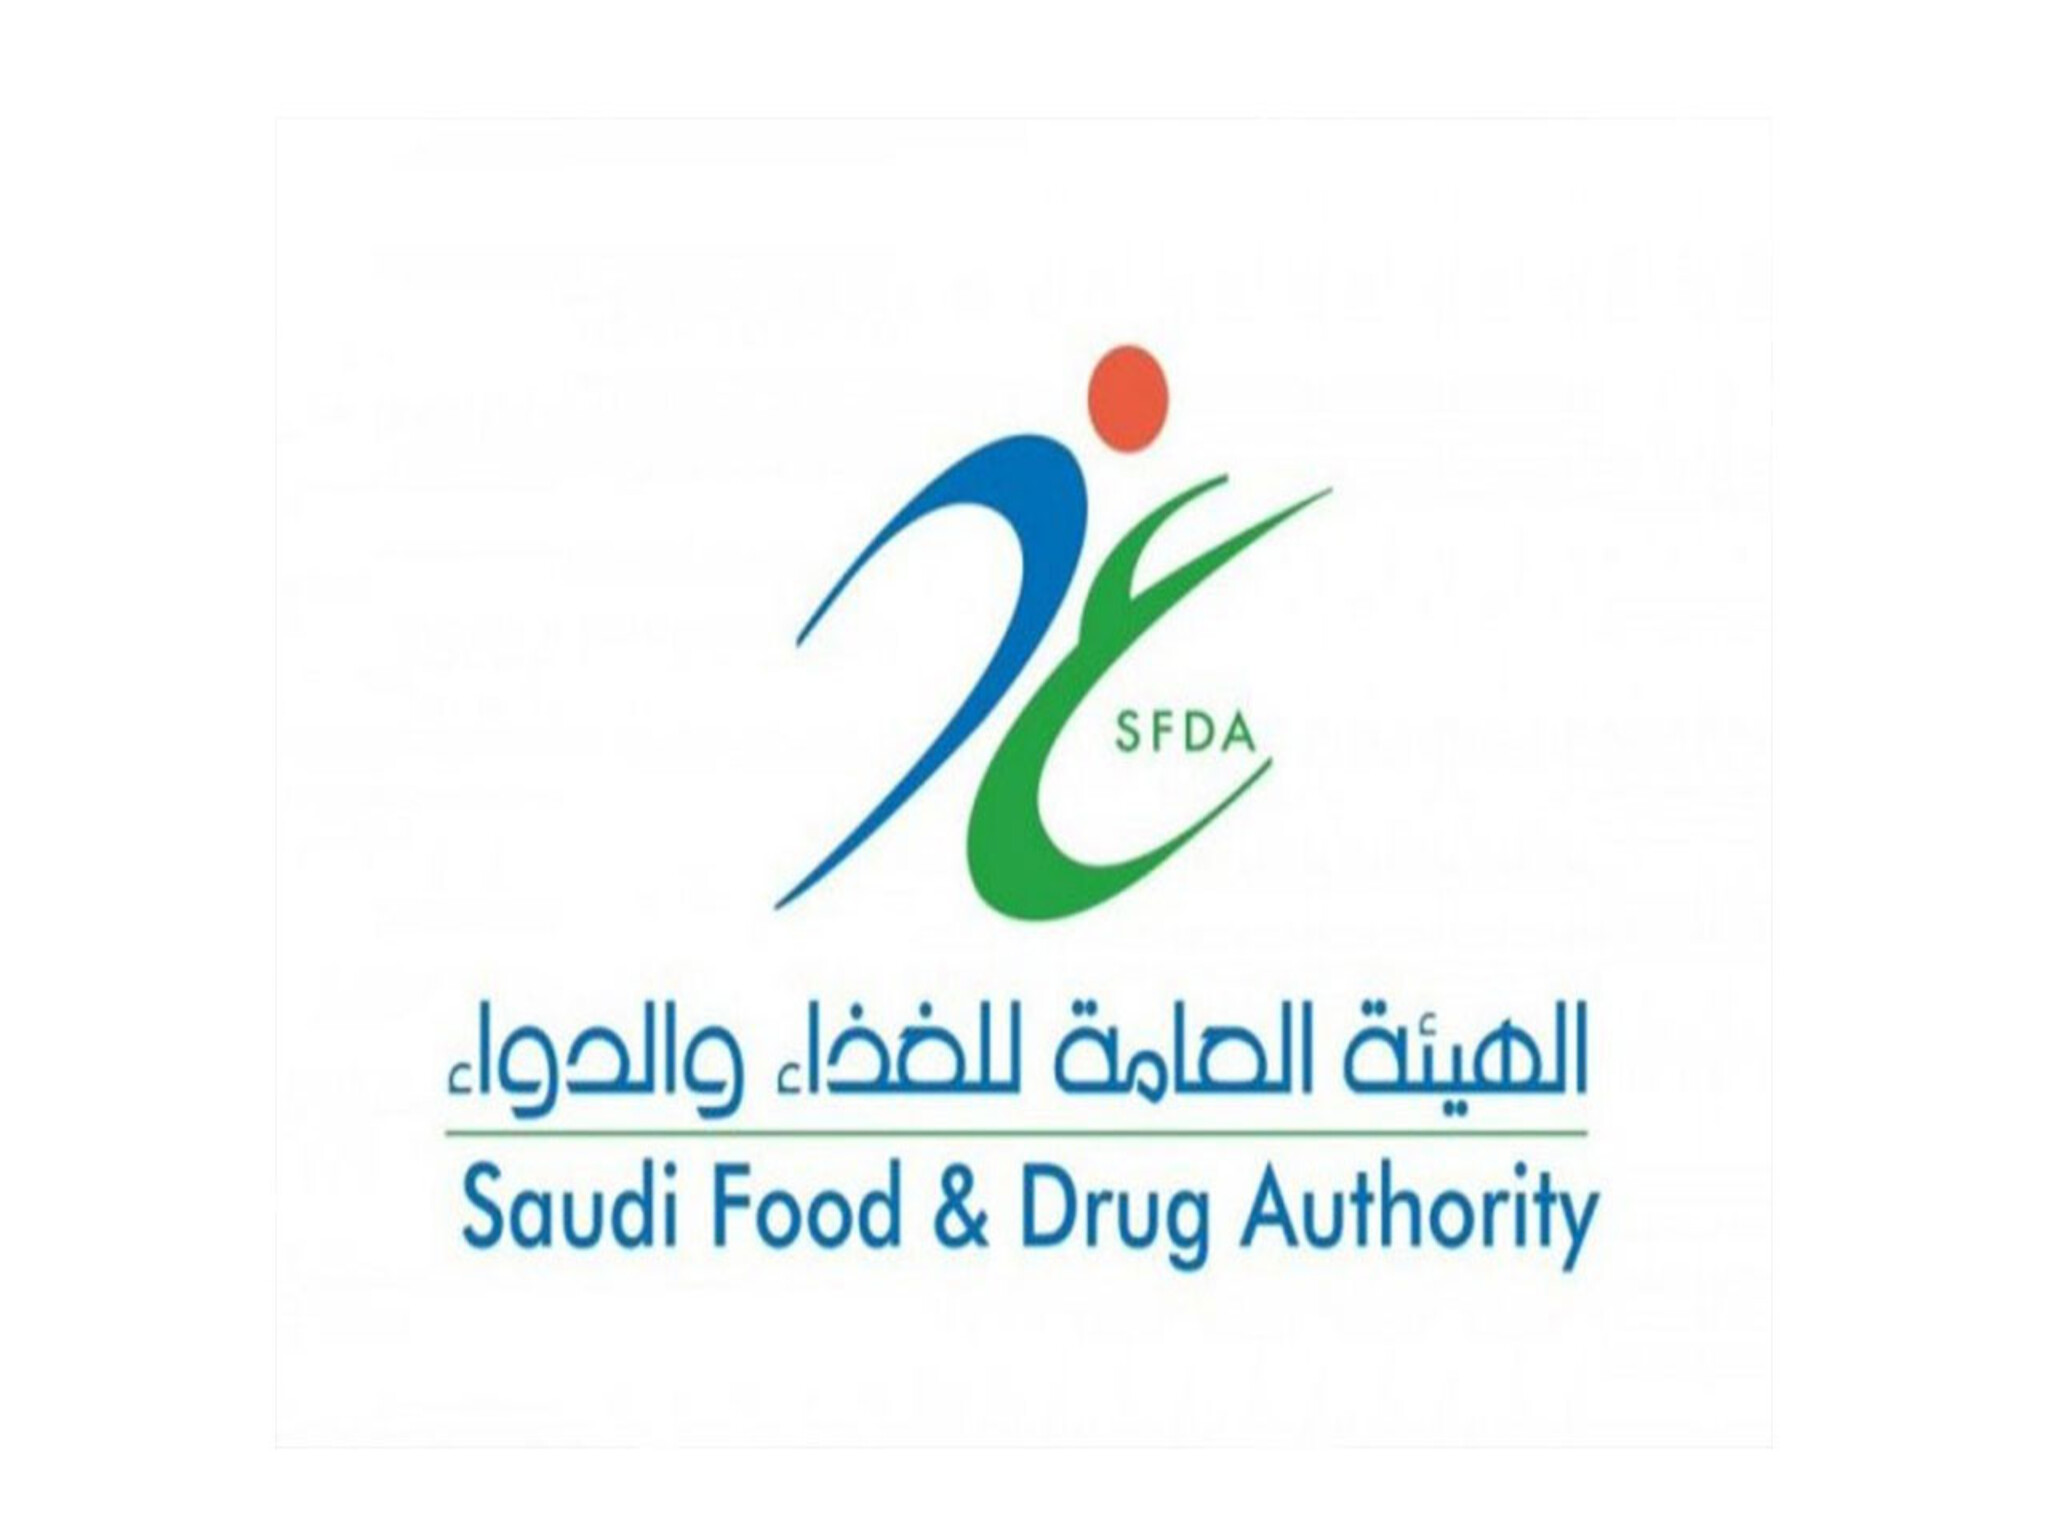 توضيحات هامة من هيئة الغذاء والدواء بشأن اللقاحات المتداولة داخل المملكة السعودية